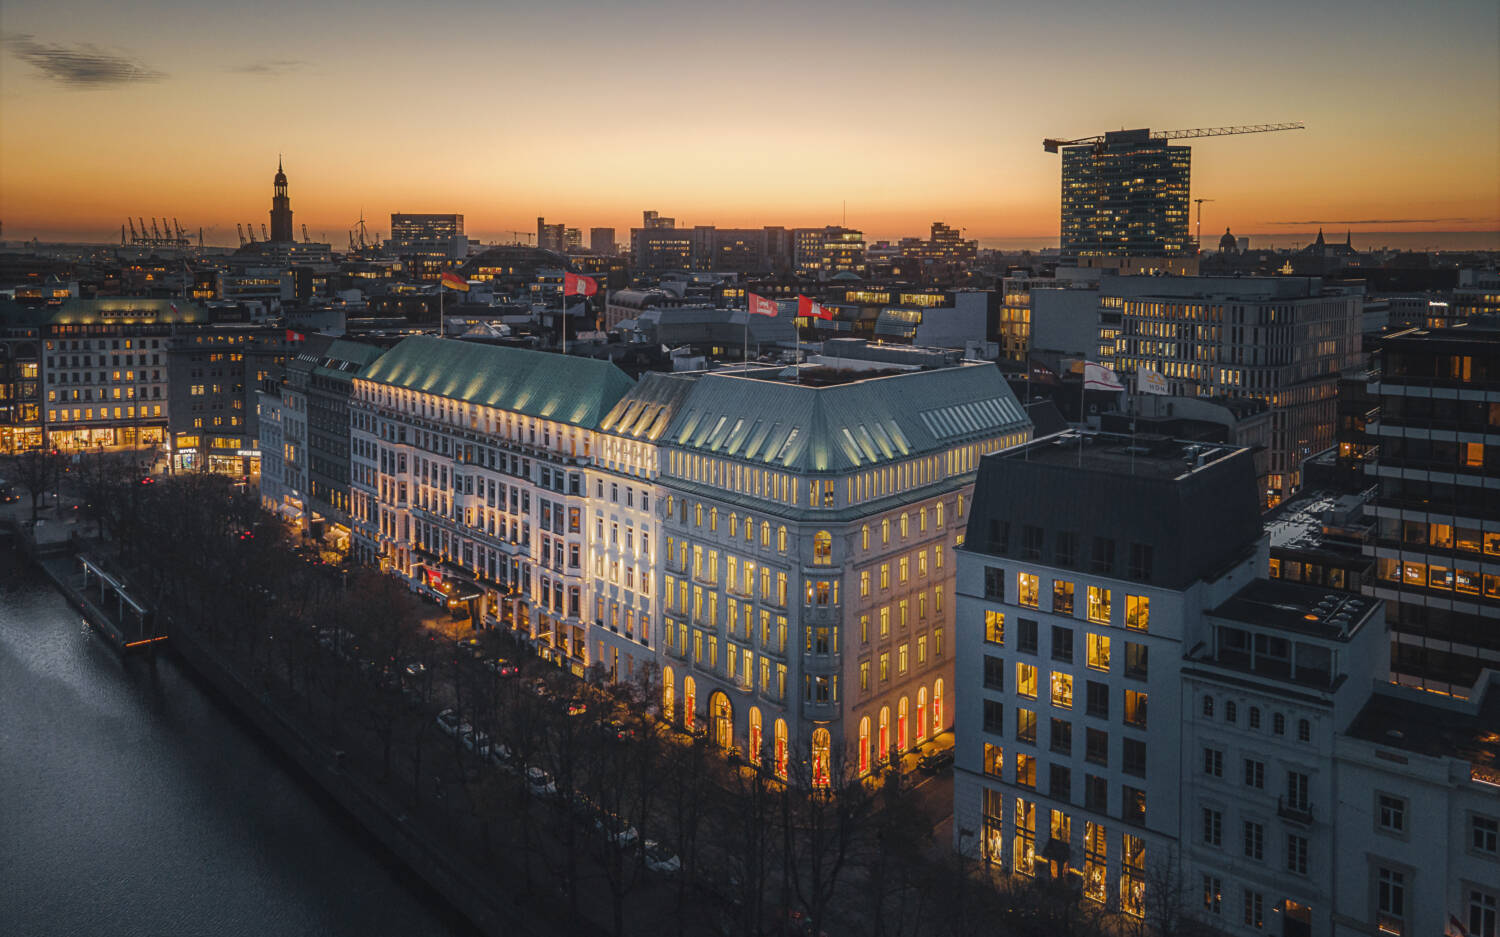 Das Fairmont Hotel Vier Jahreszeiten gehört nicht nur zu den besten Hotels in Hamburg, sondern in ganz Deutschland / ©Matthias Plander